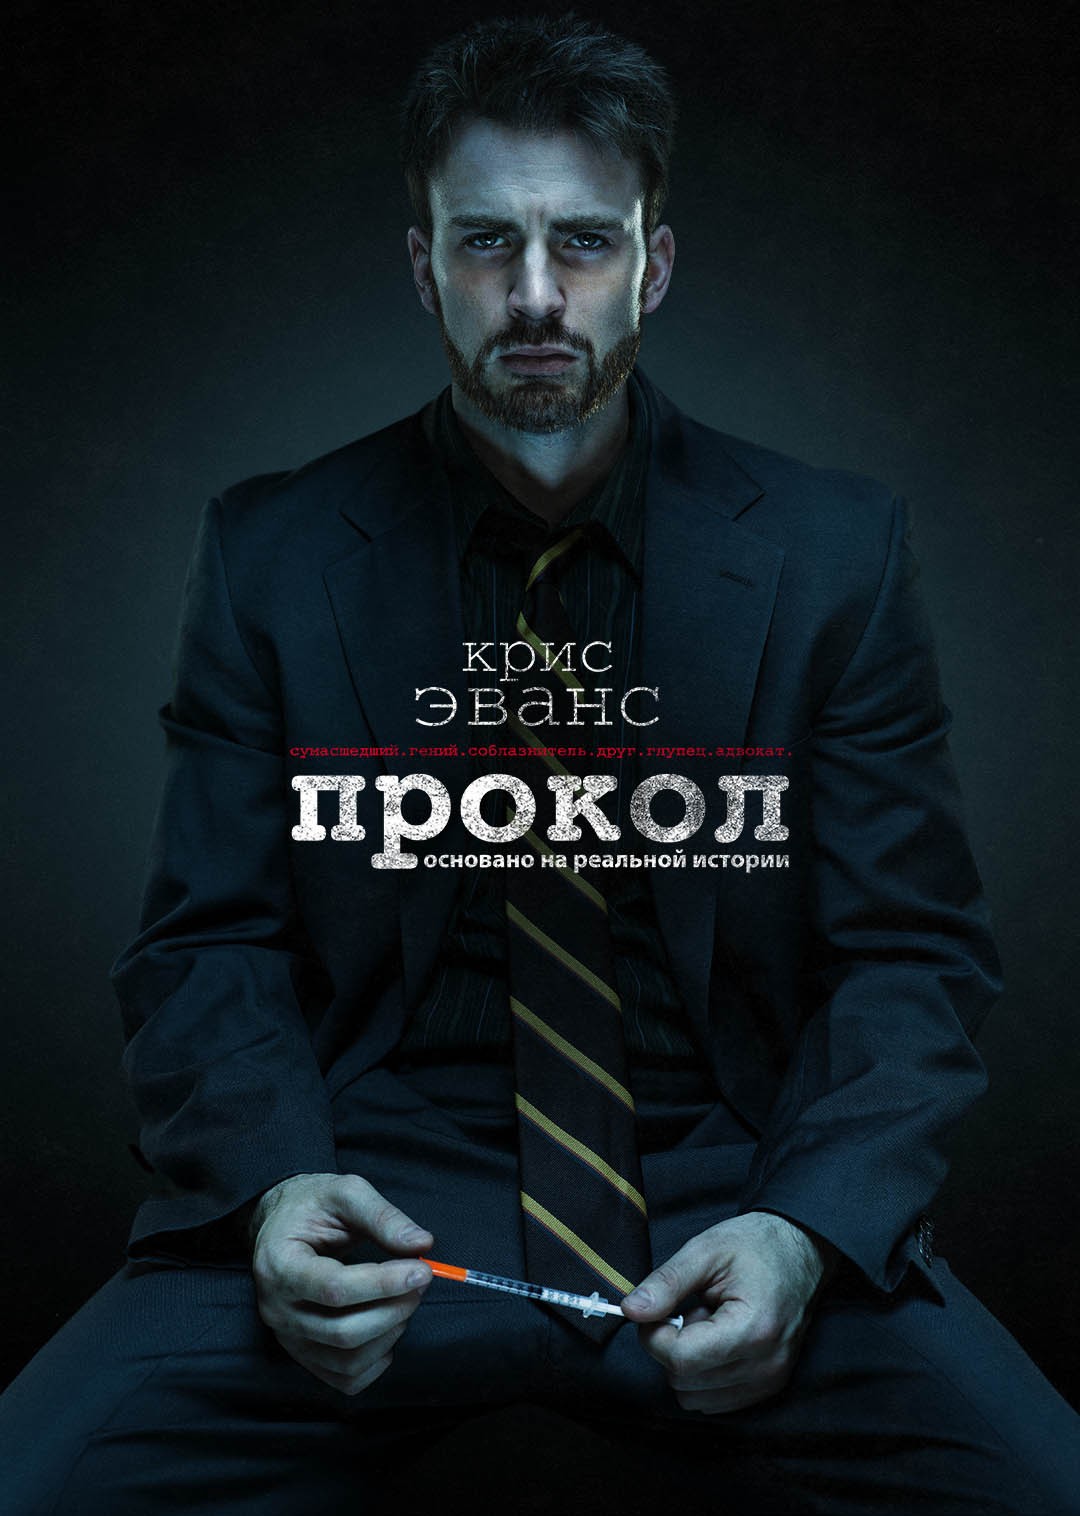 Постер N173551 к фильму Прокол (2011)